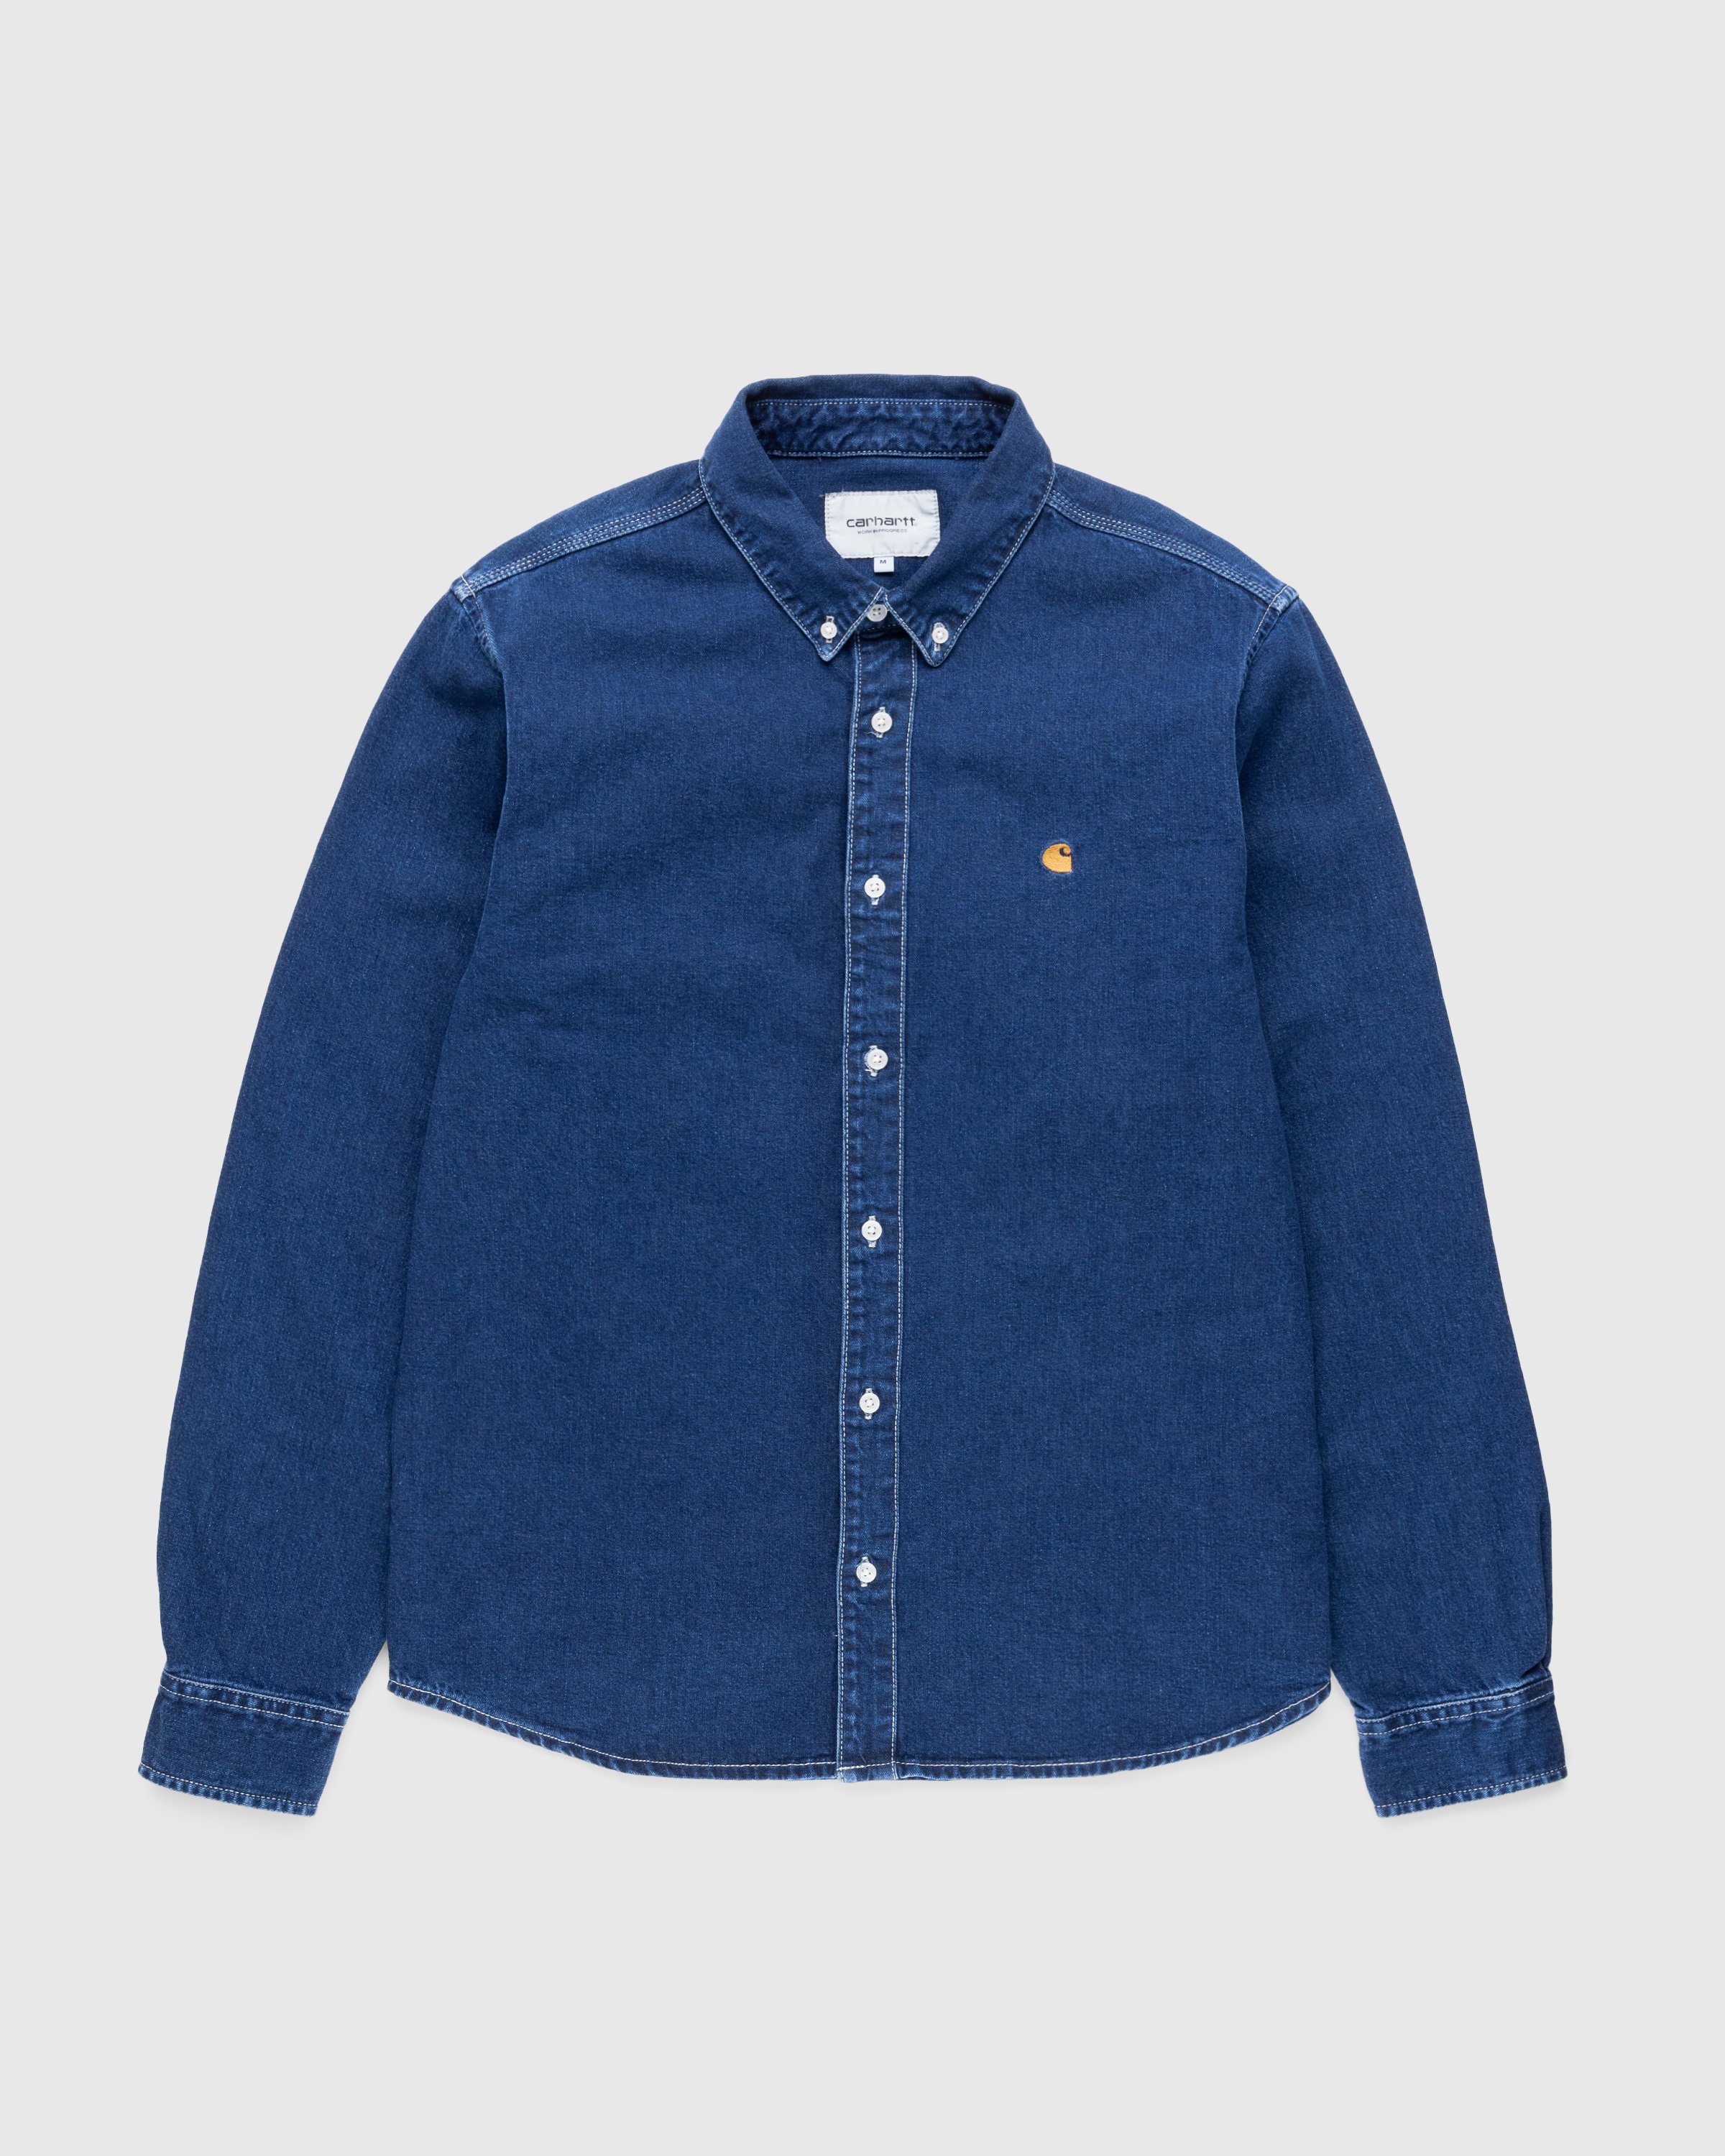 Carhartt WIP - Weldon Denim Shirt Stonewashed Blue - Clothing - Blue - Image 1